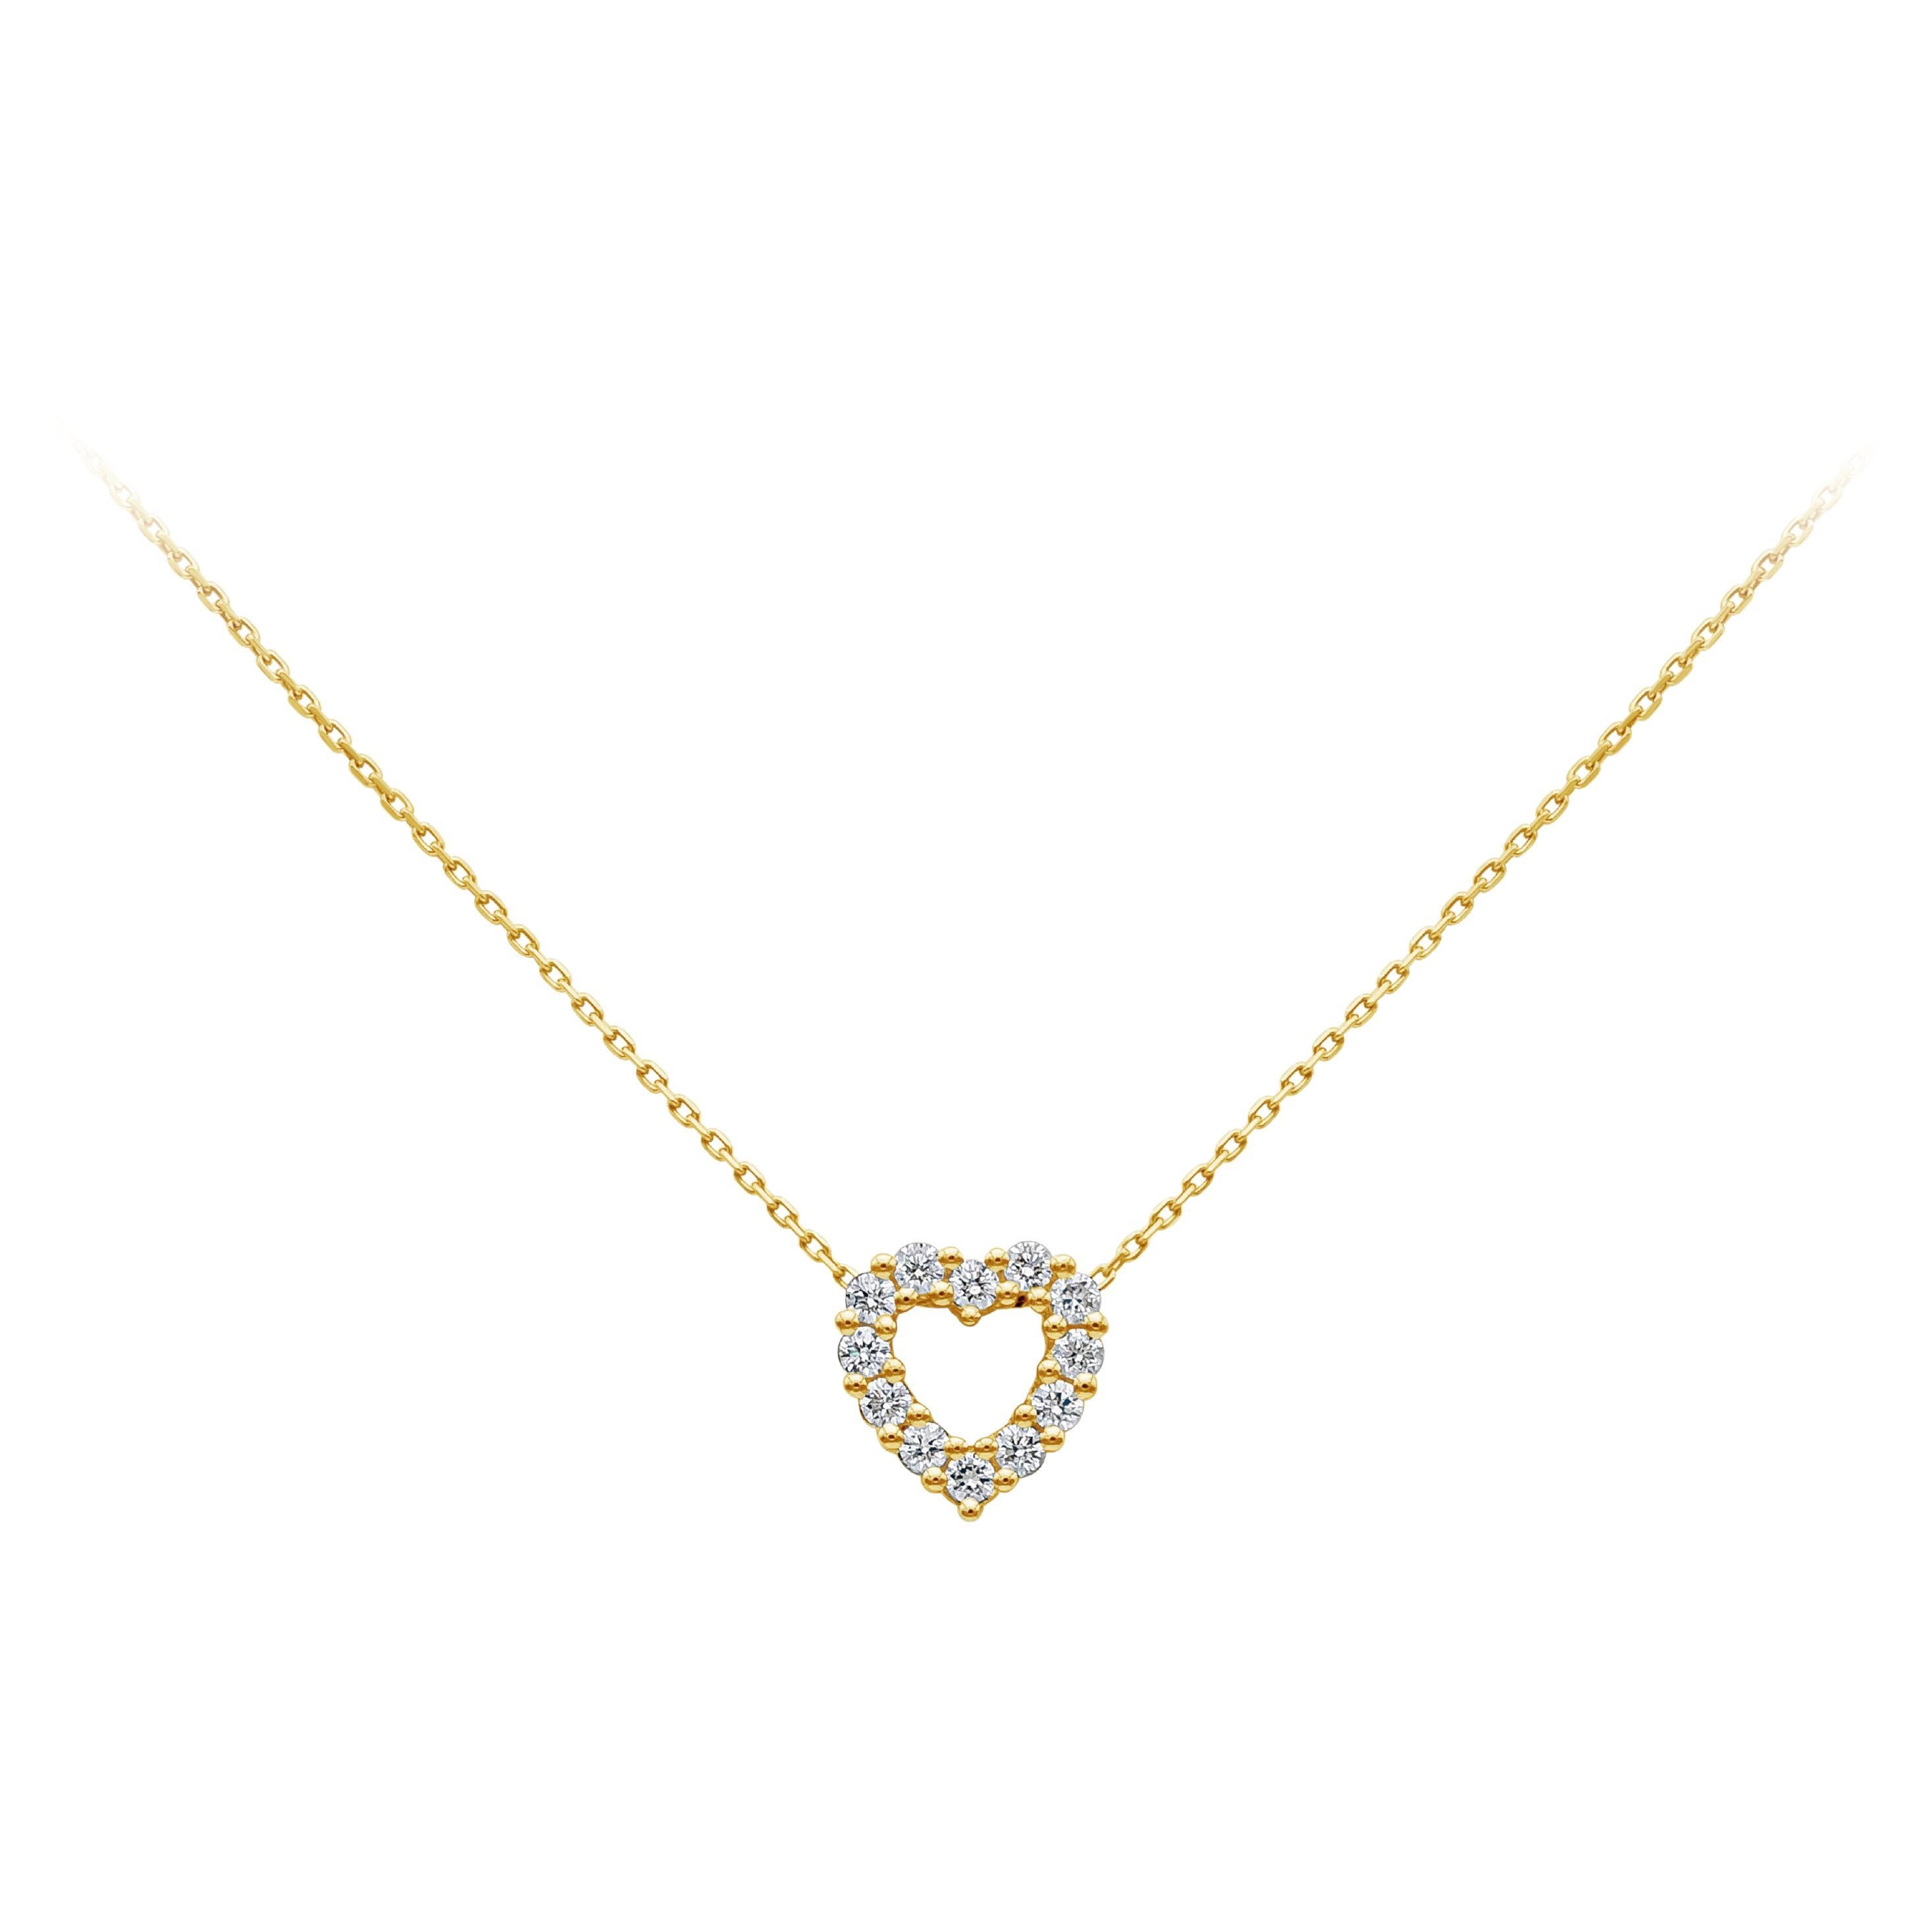 Roman Malakov, collier pendentif en forme de cœur ajouré avec diamants ronds de 0,34 carat au total